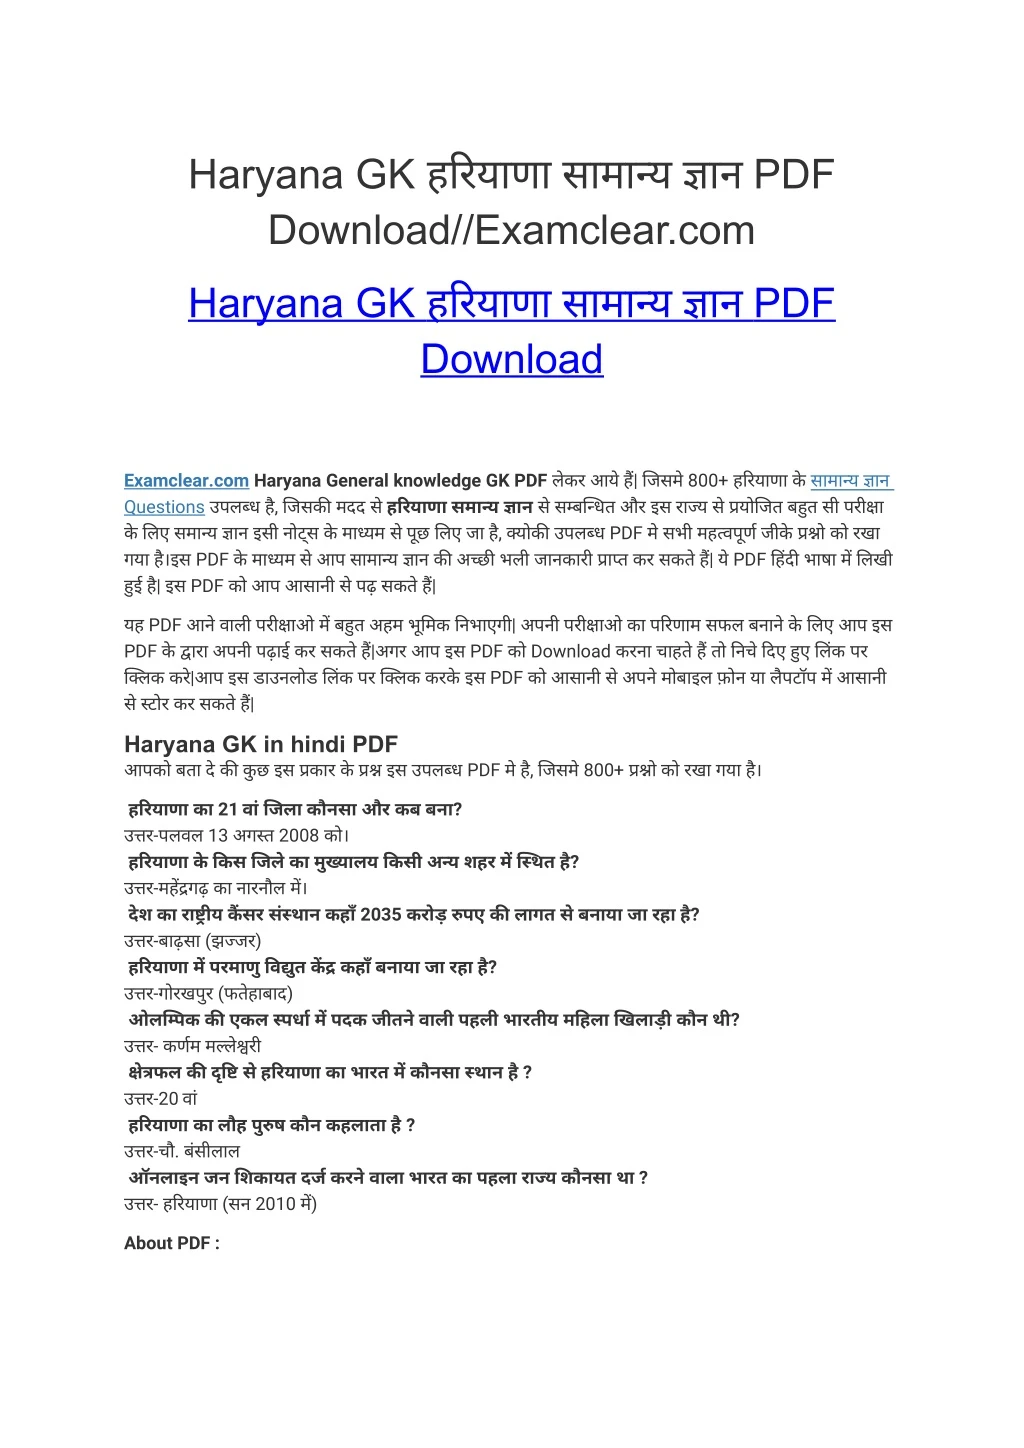 haryana gk pdf download examclear com